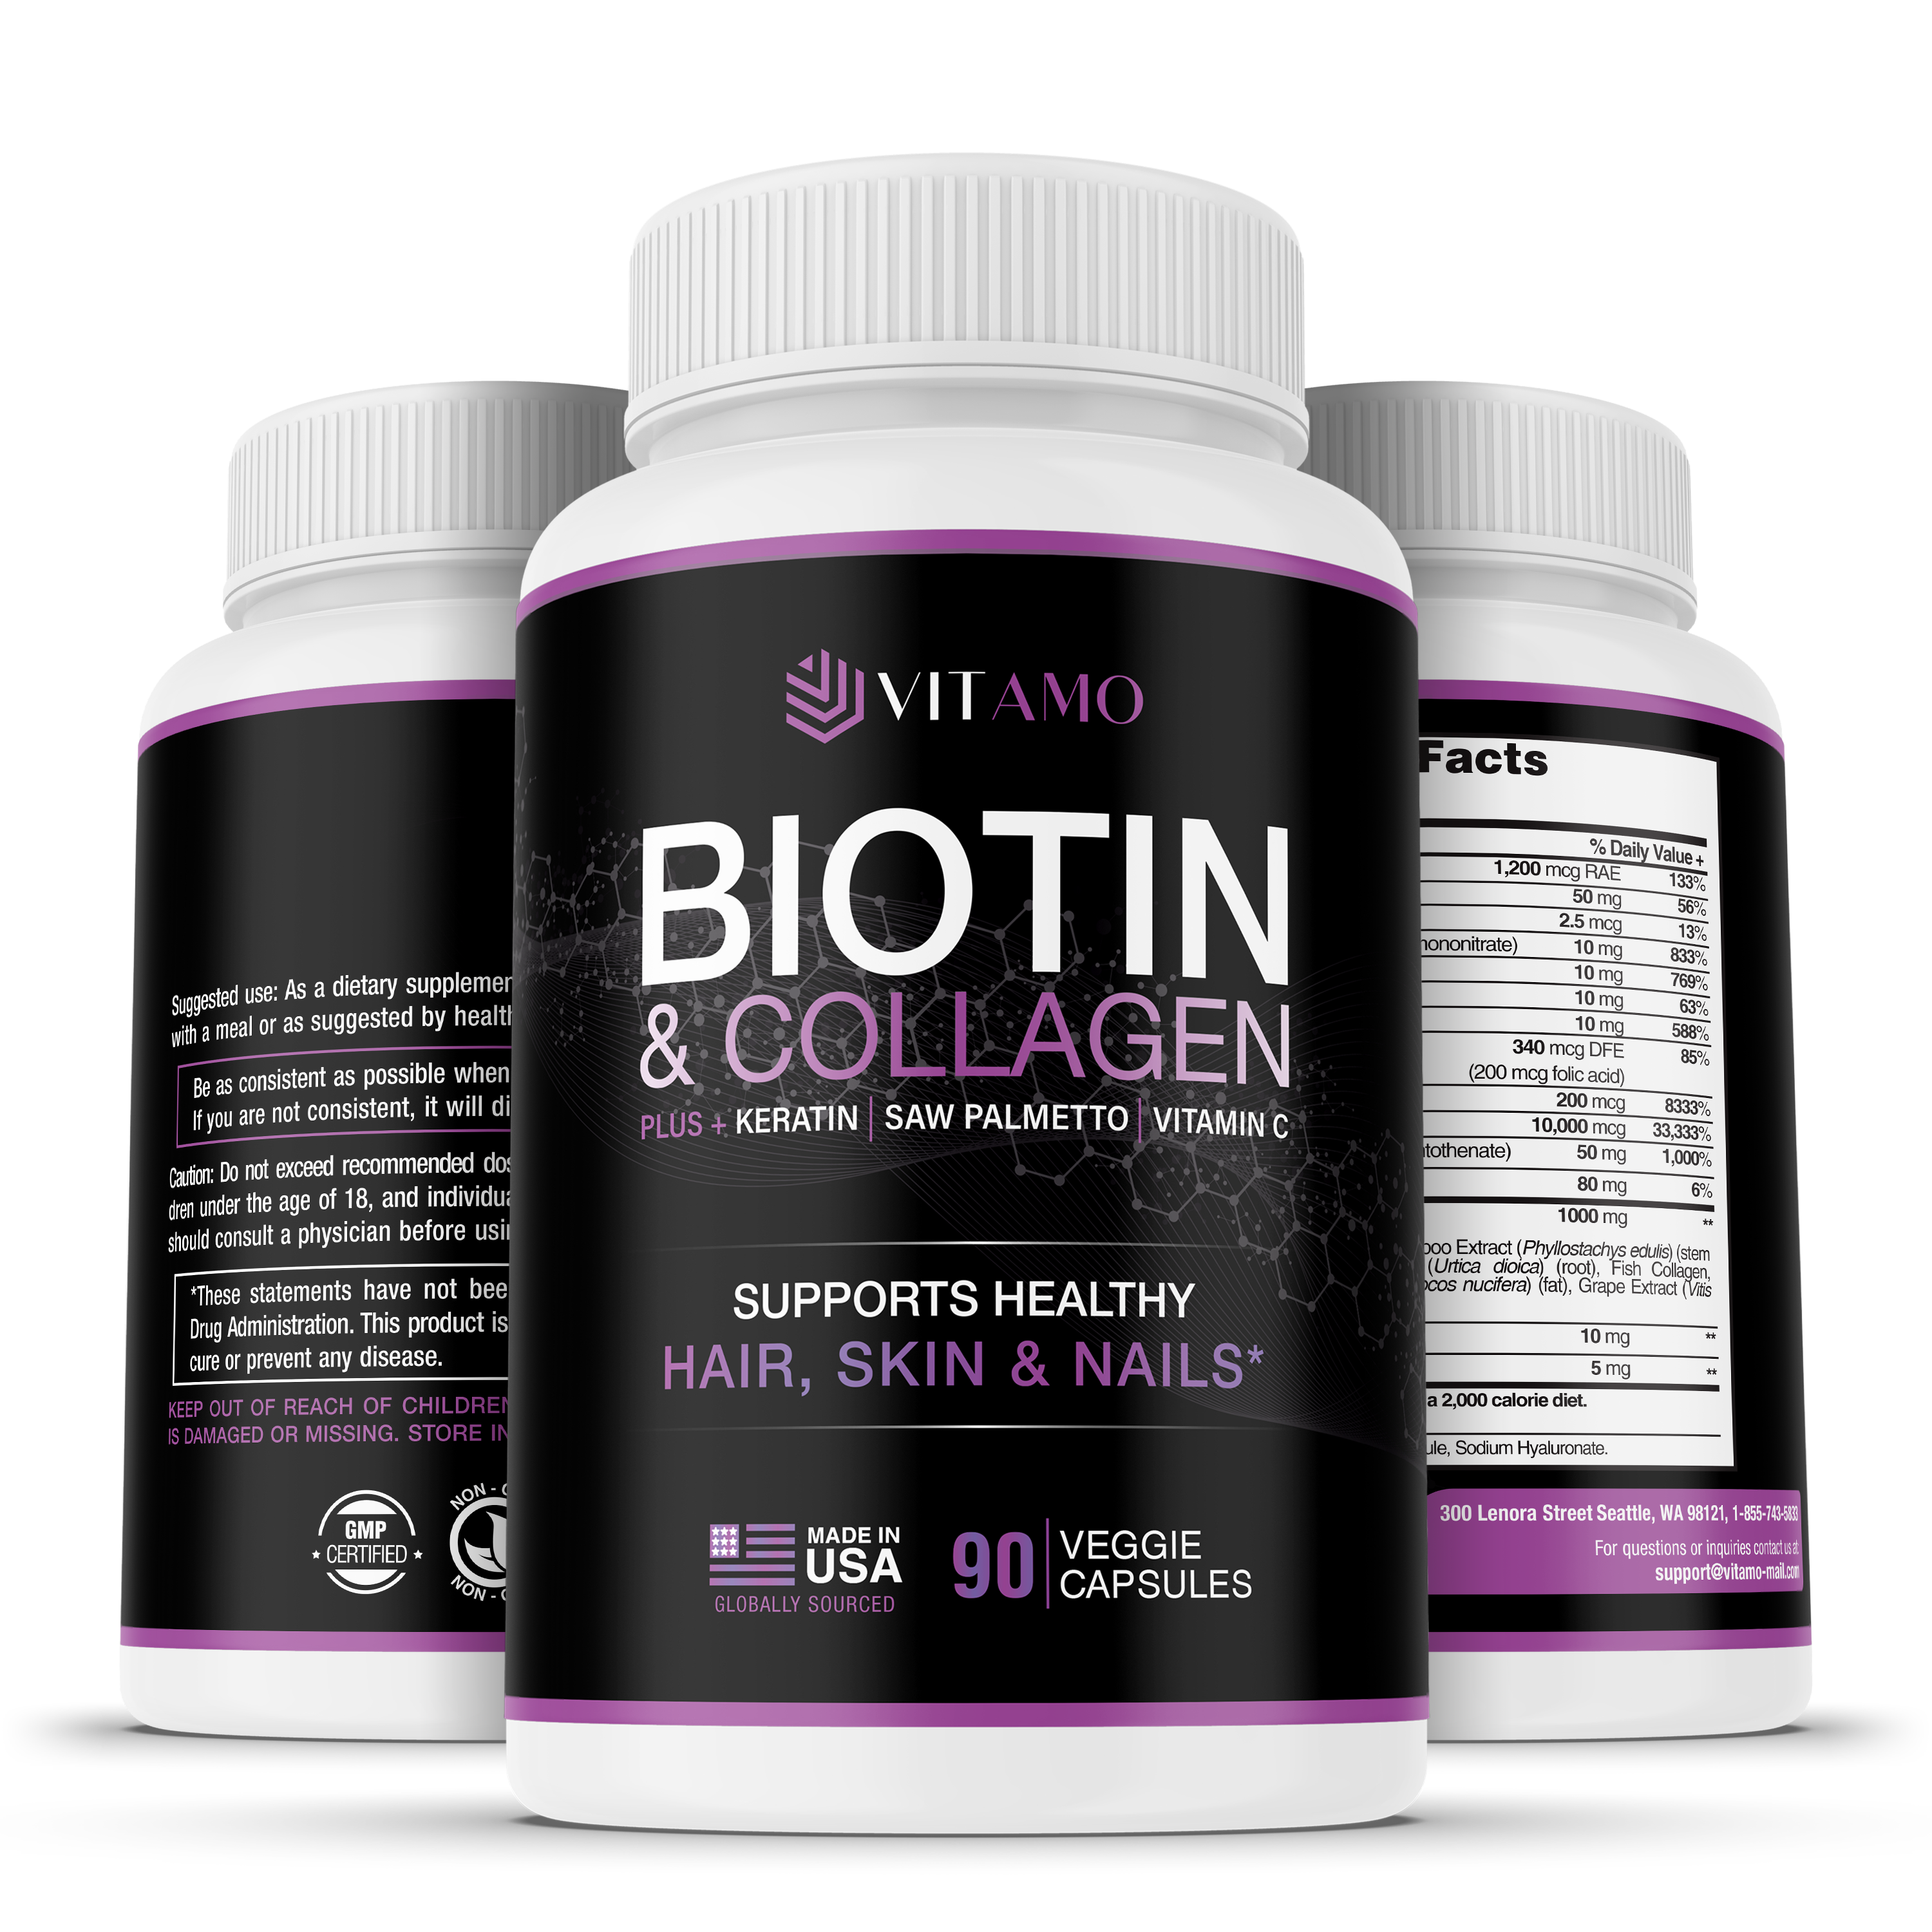 Premium Biotin & Collagen capsules